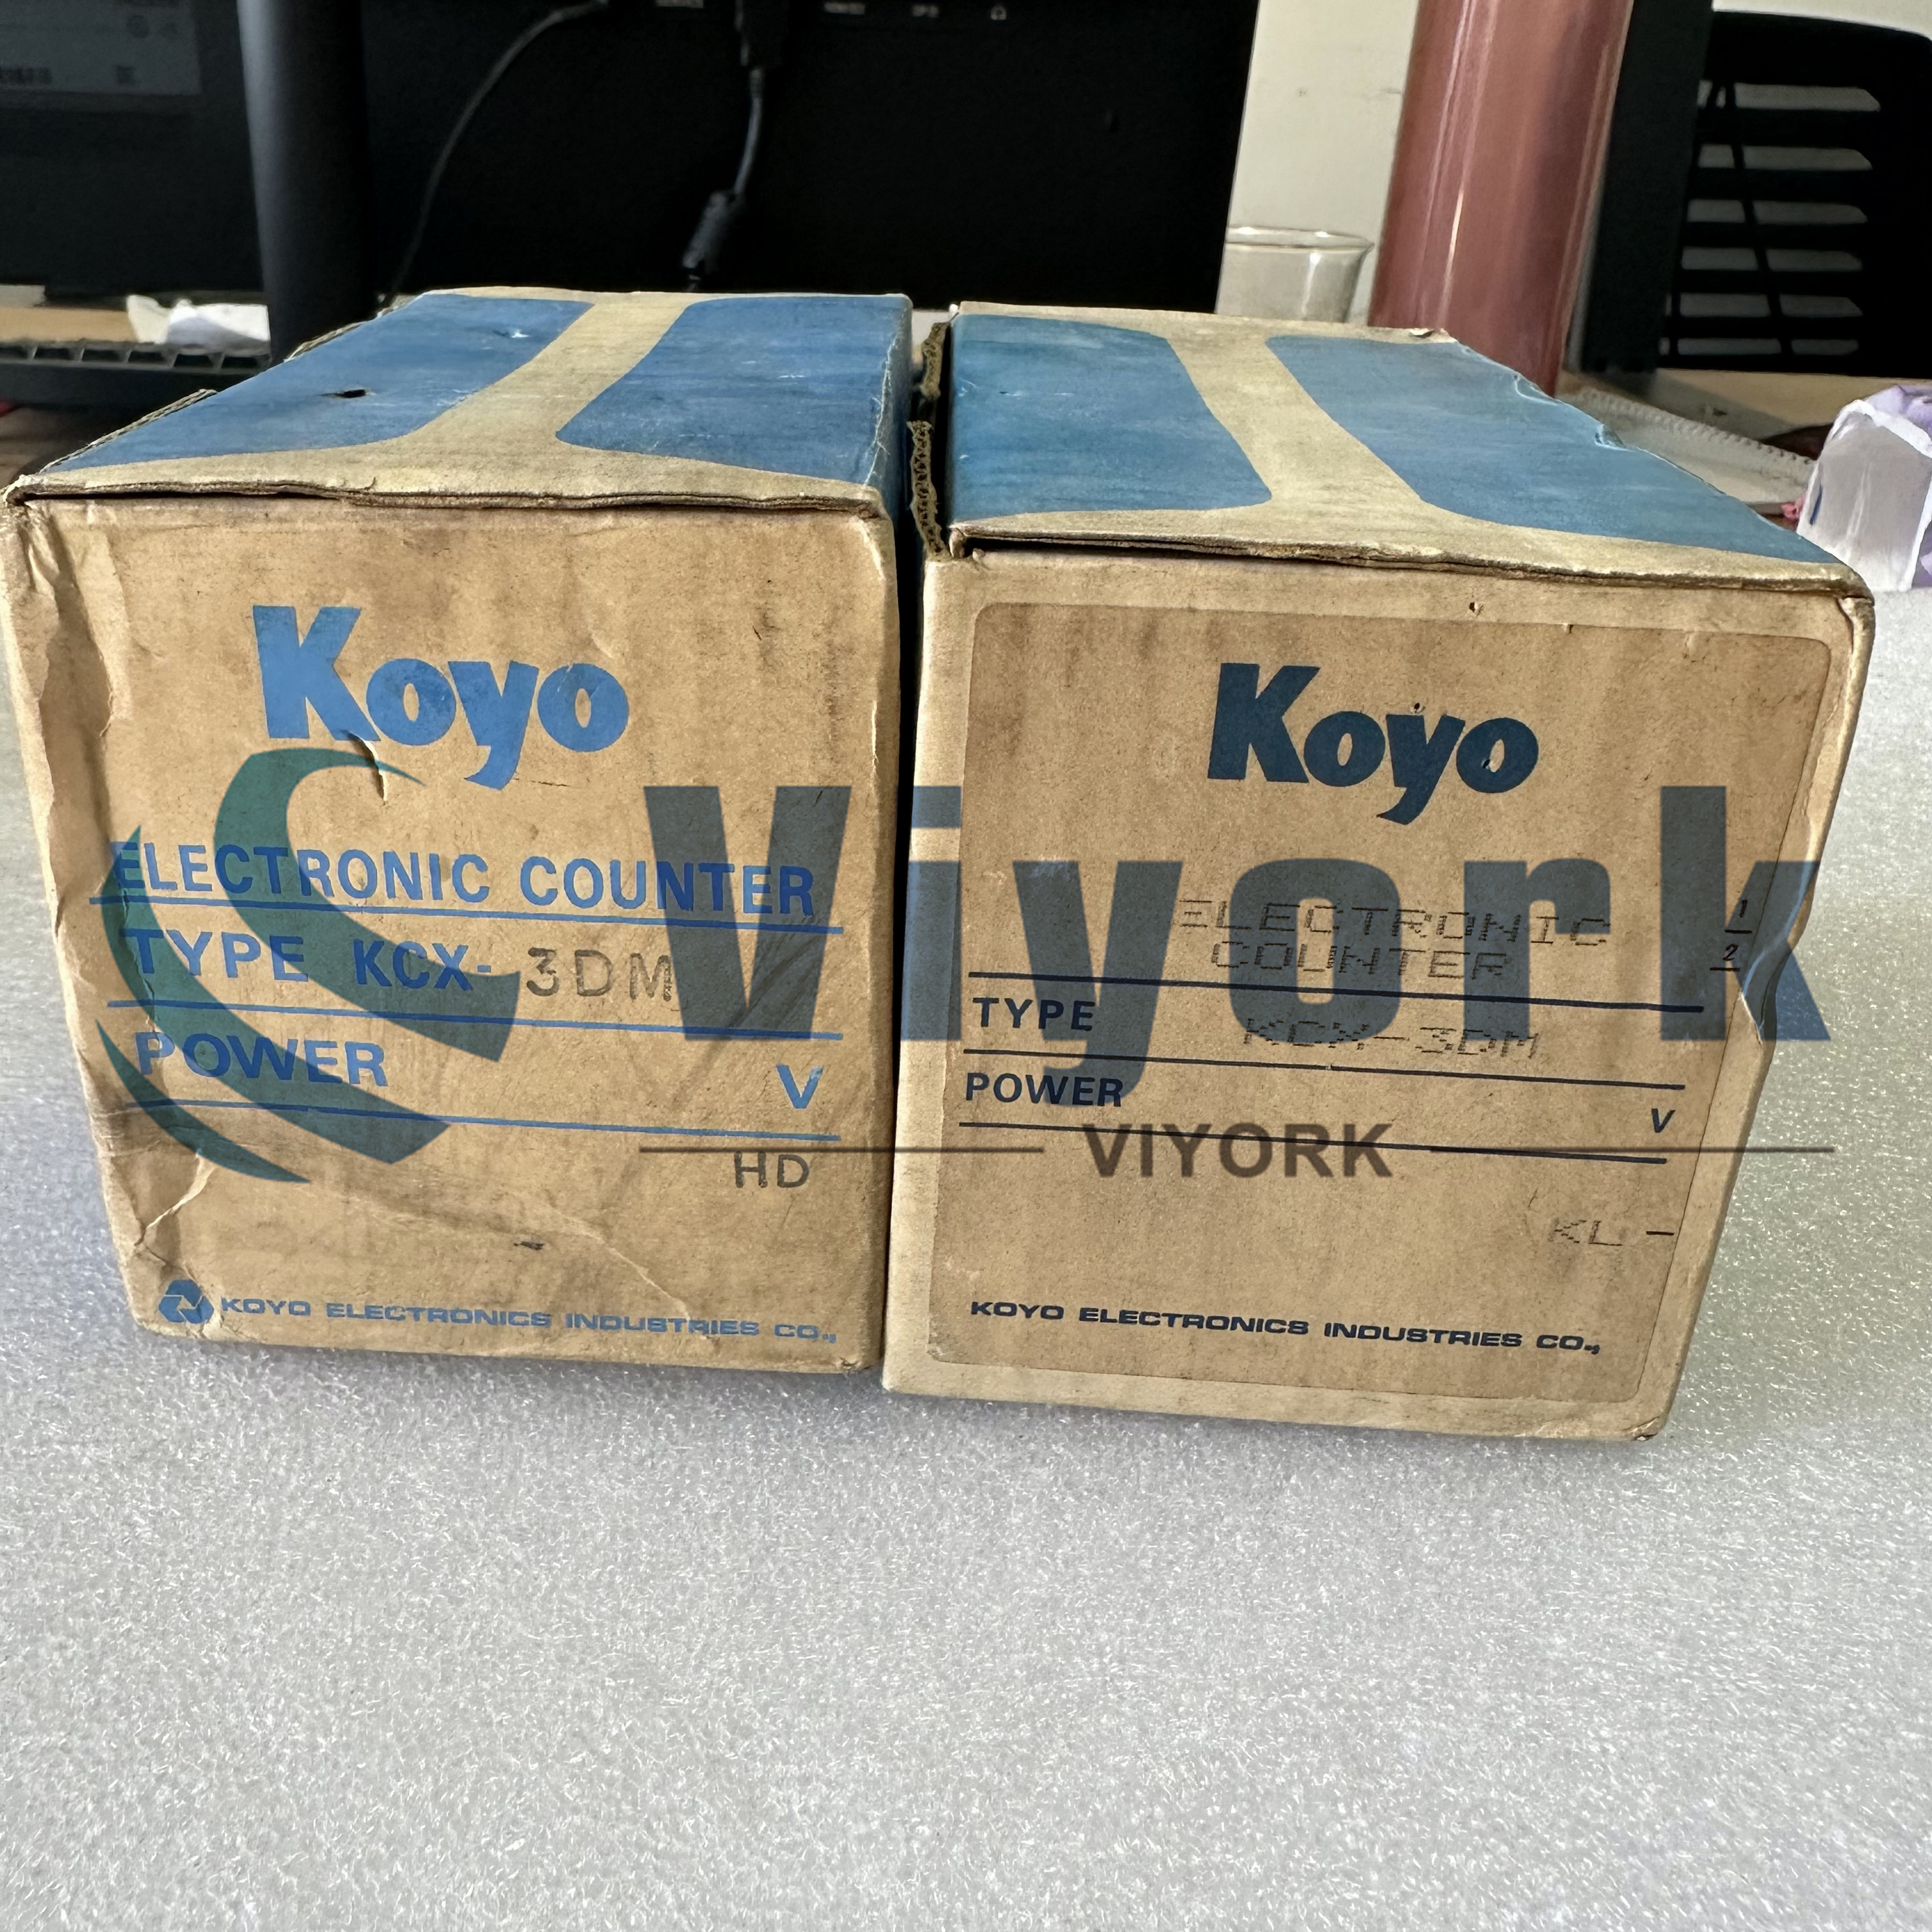 Koyo KCX-3DM Electronic Counter 180-264v-ac